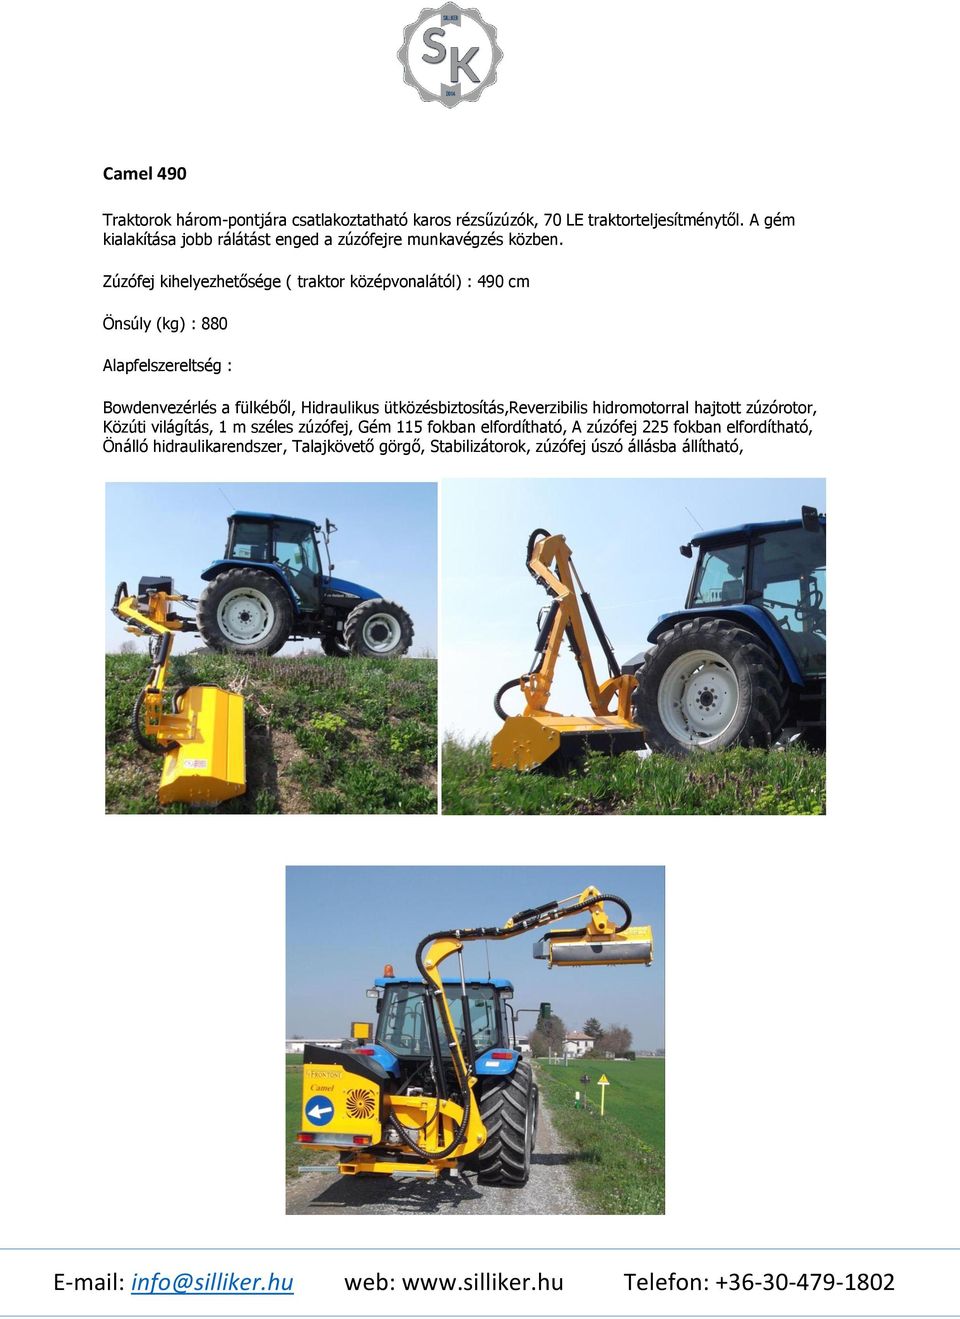 Zúzófej kihelyezhetősége ( traktor középvonalától) : 490 cm Önsúly (kg) : 880 Alapfelszereltség : Bowdenvezérlés a fülkéből, Hidraulikus